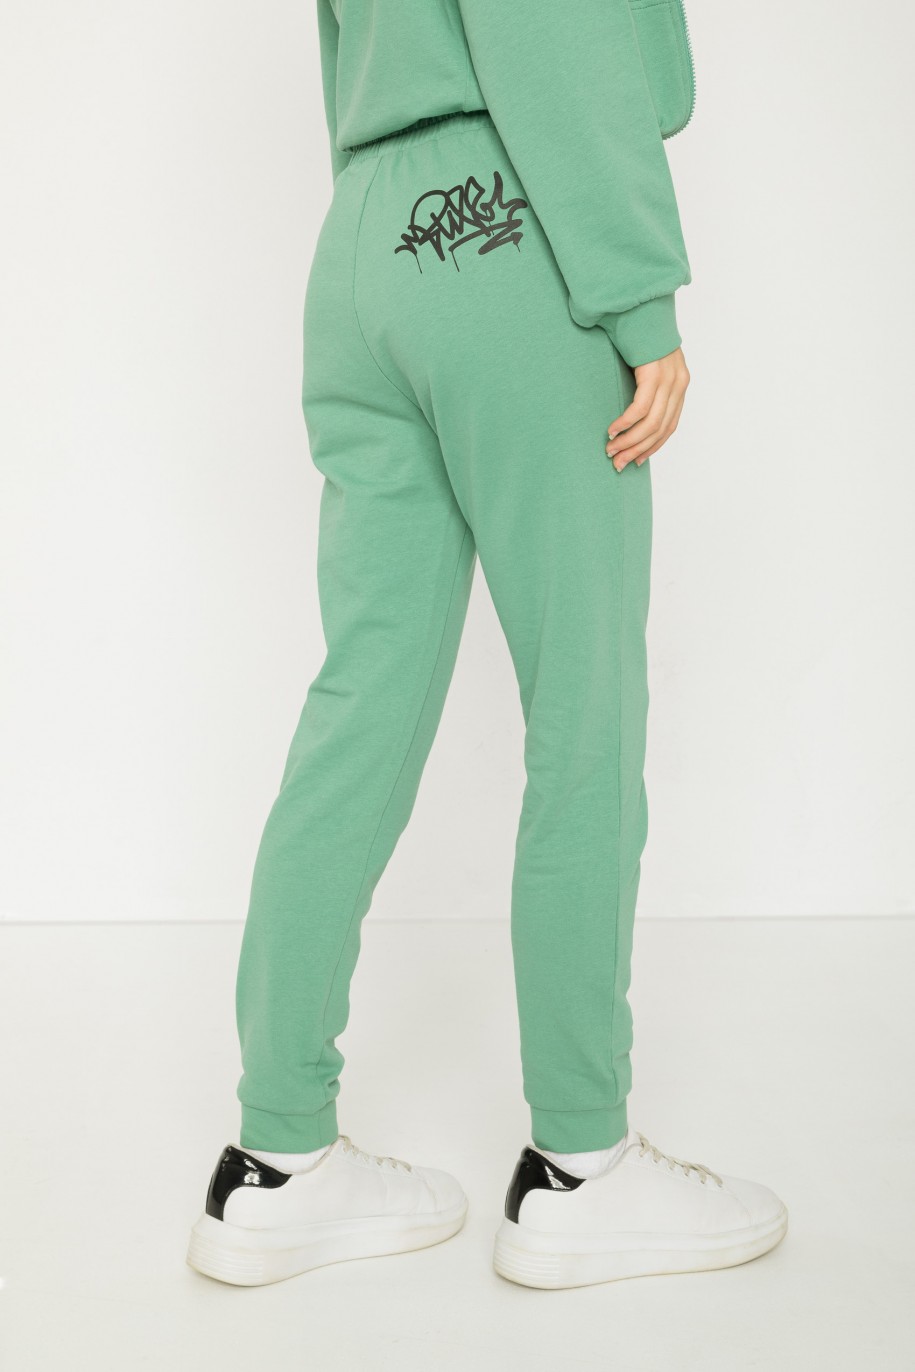 Zielone spodnie dresowe z nadrukiem graffiti - 43408